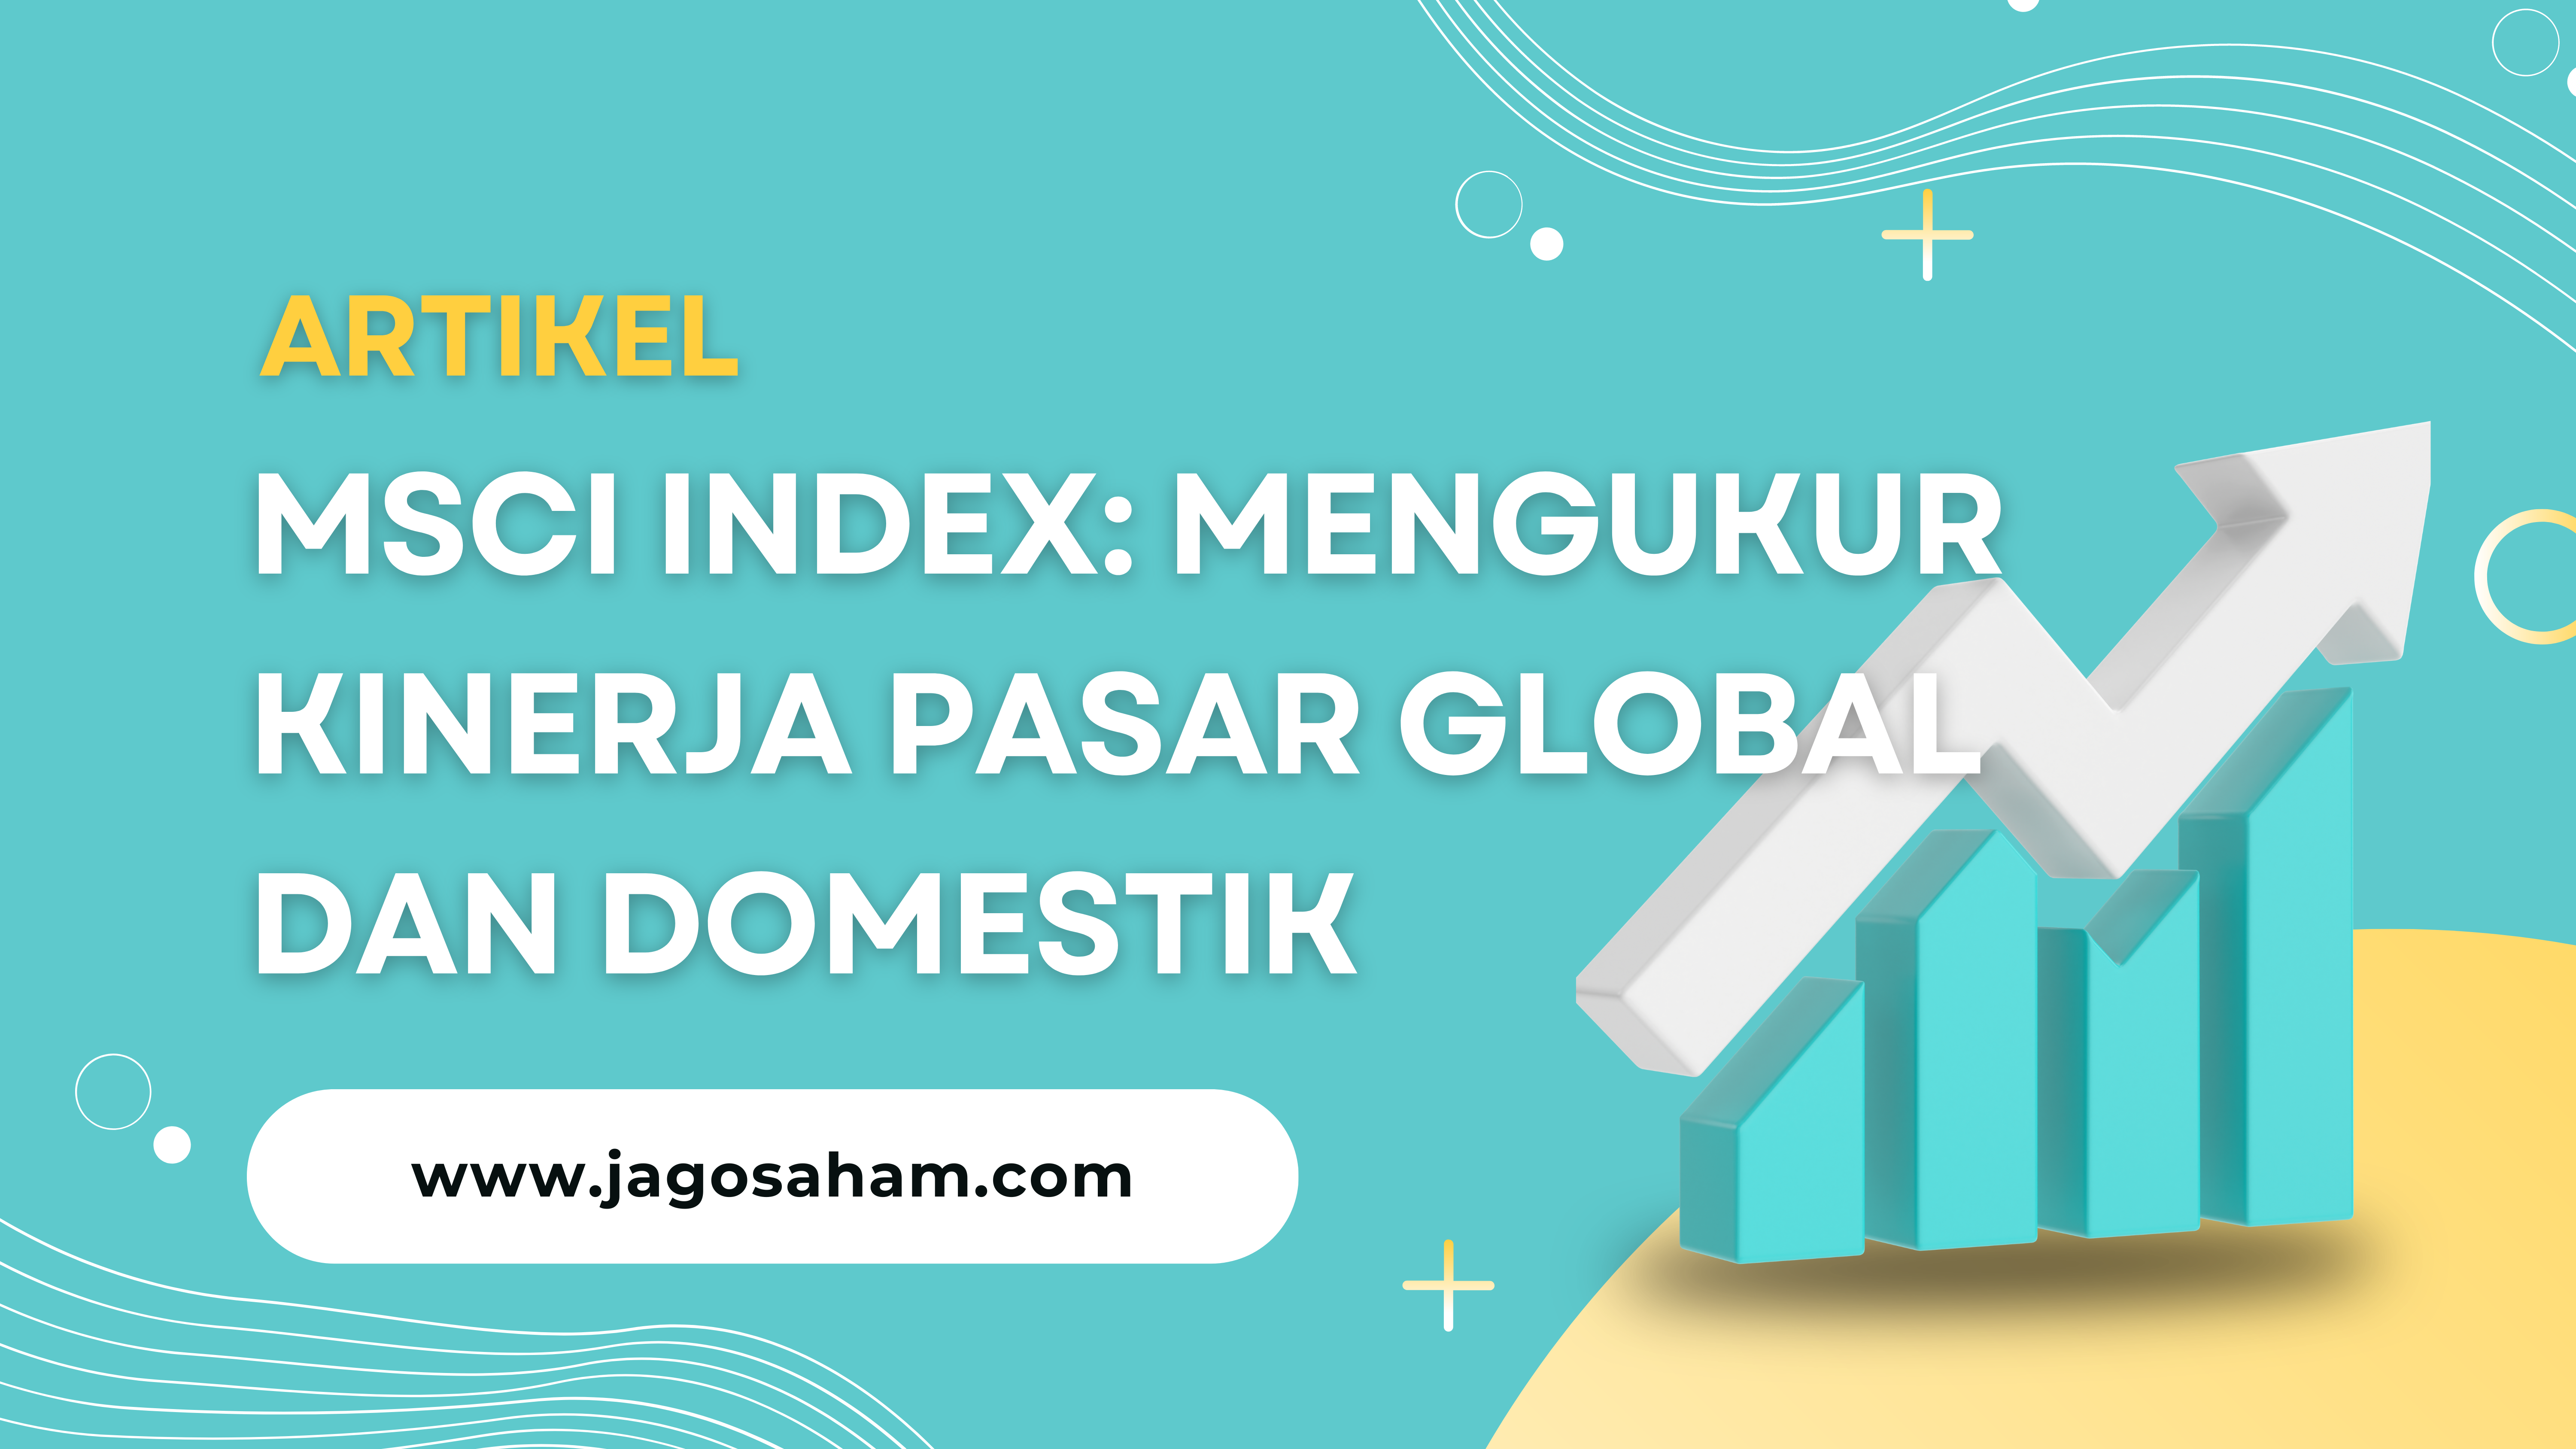 MSCI Index: Mengukur Kinerja Pasar Global dan Domestik